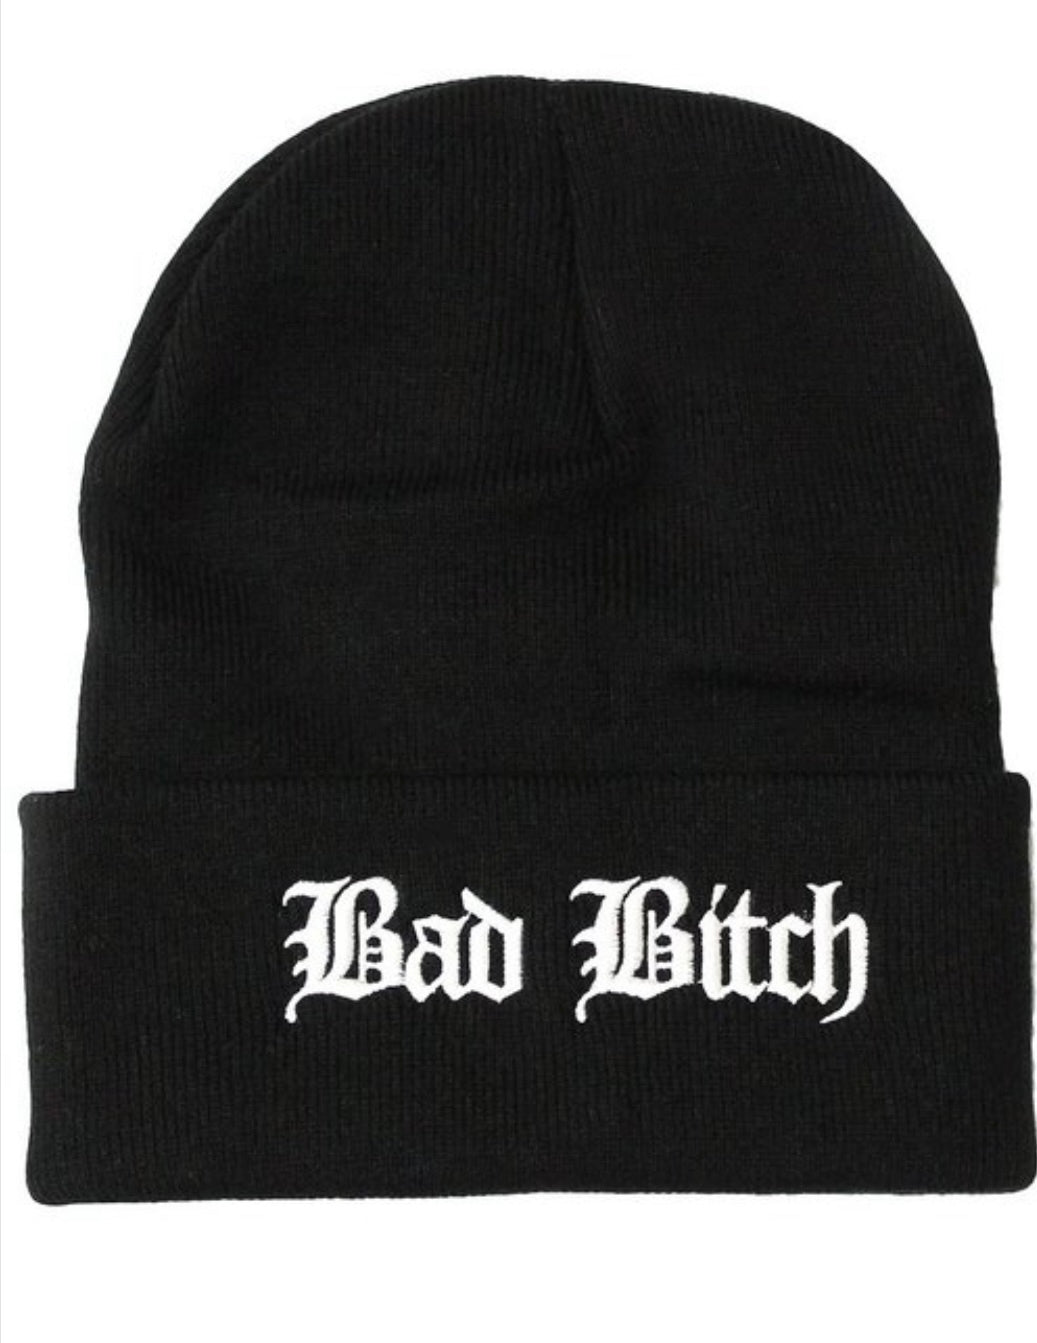 beenie, hat ,winter hat, blackhat, bad bitch, bad bitch hat,